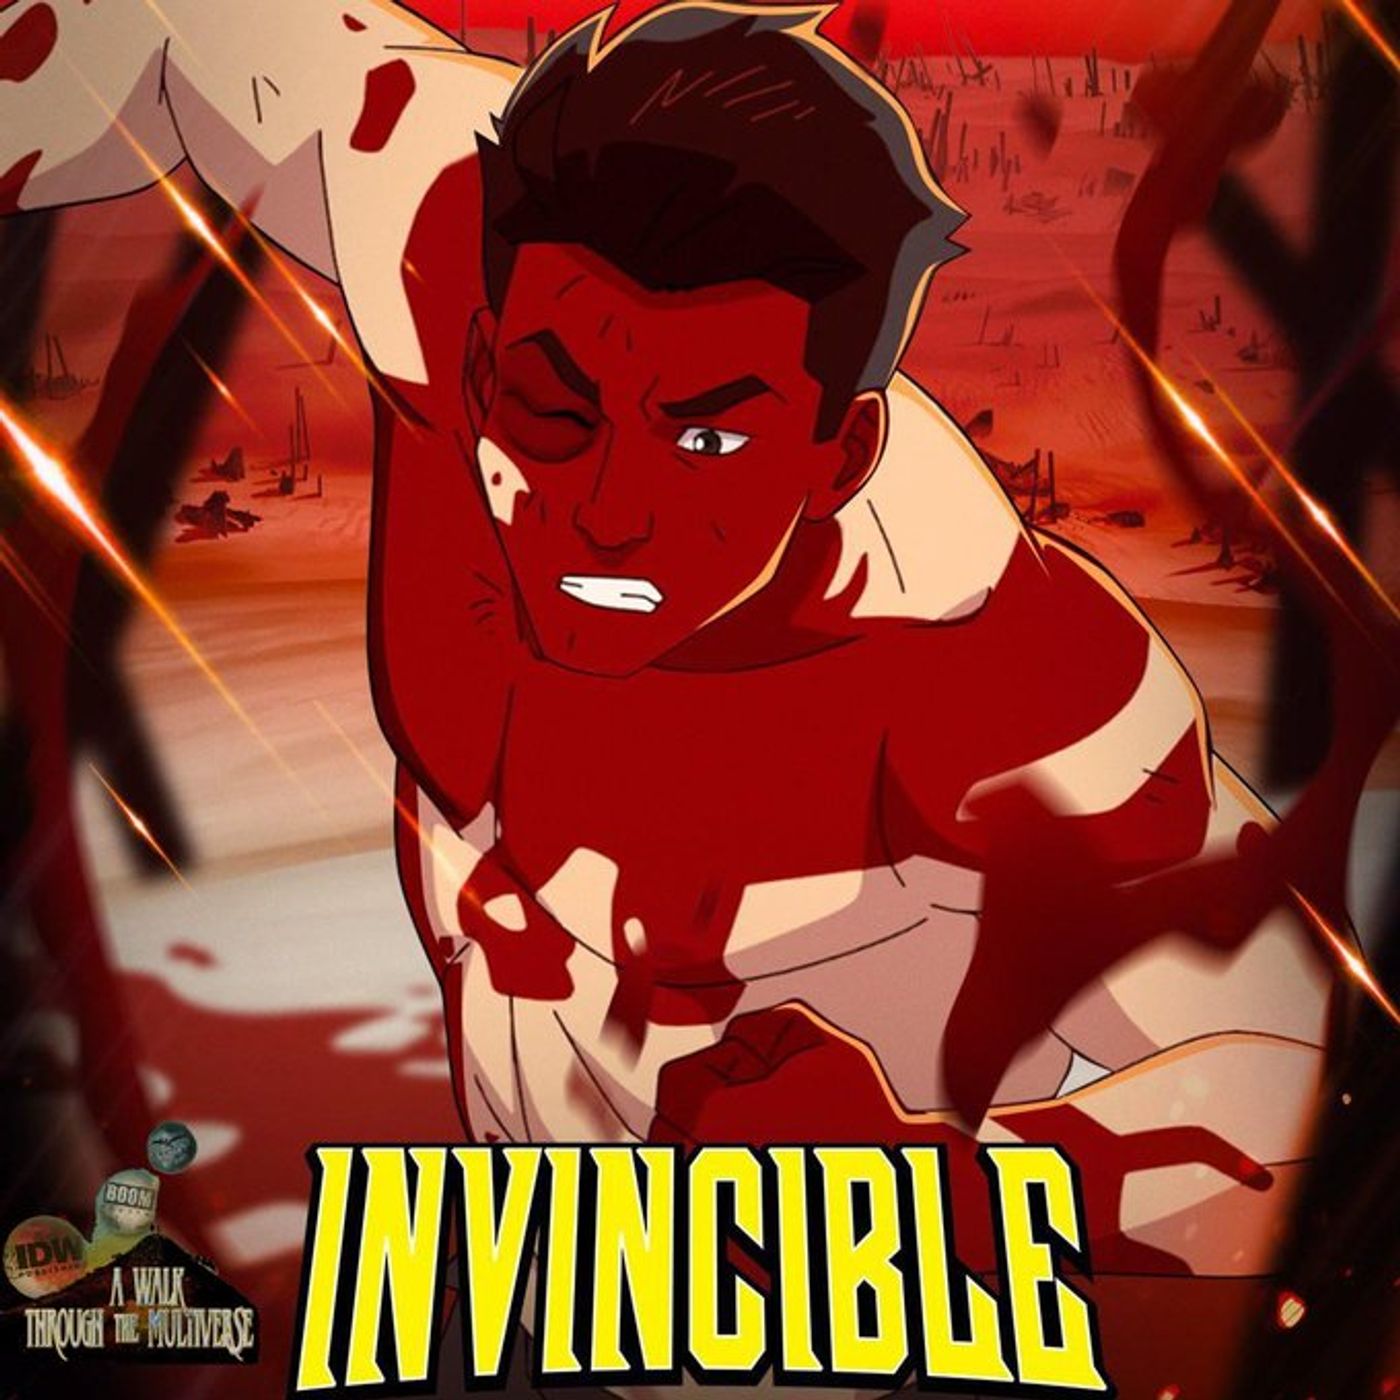 Invincible Season 2 Episode 8 Review - A Walk Through The Multiverse Episode 92